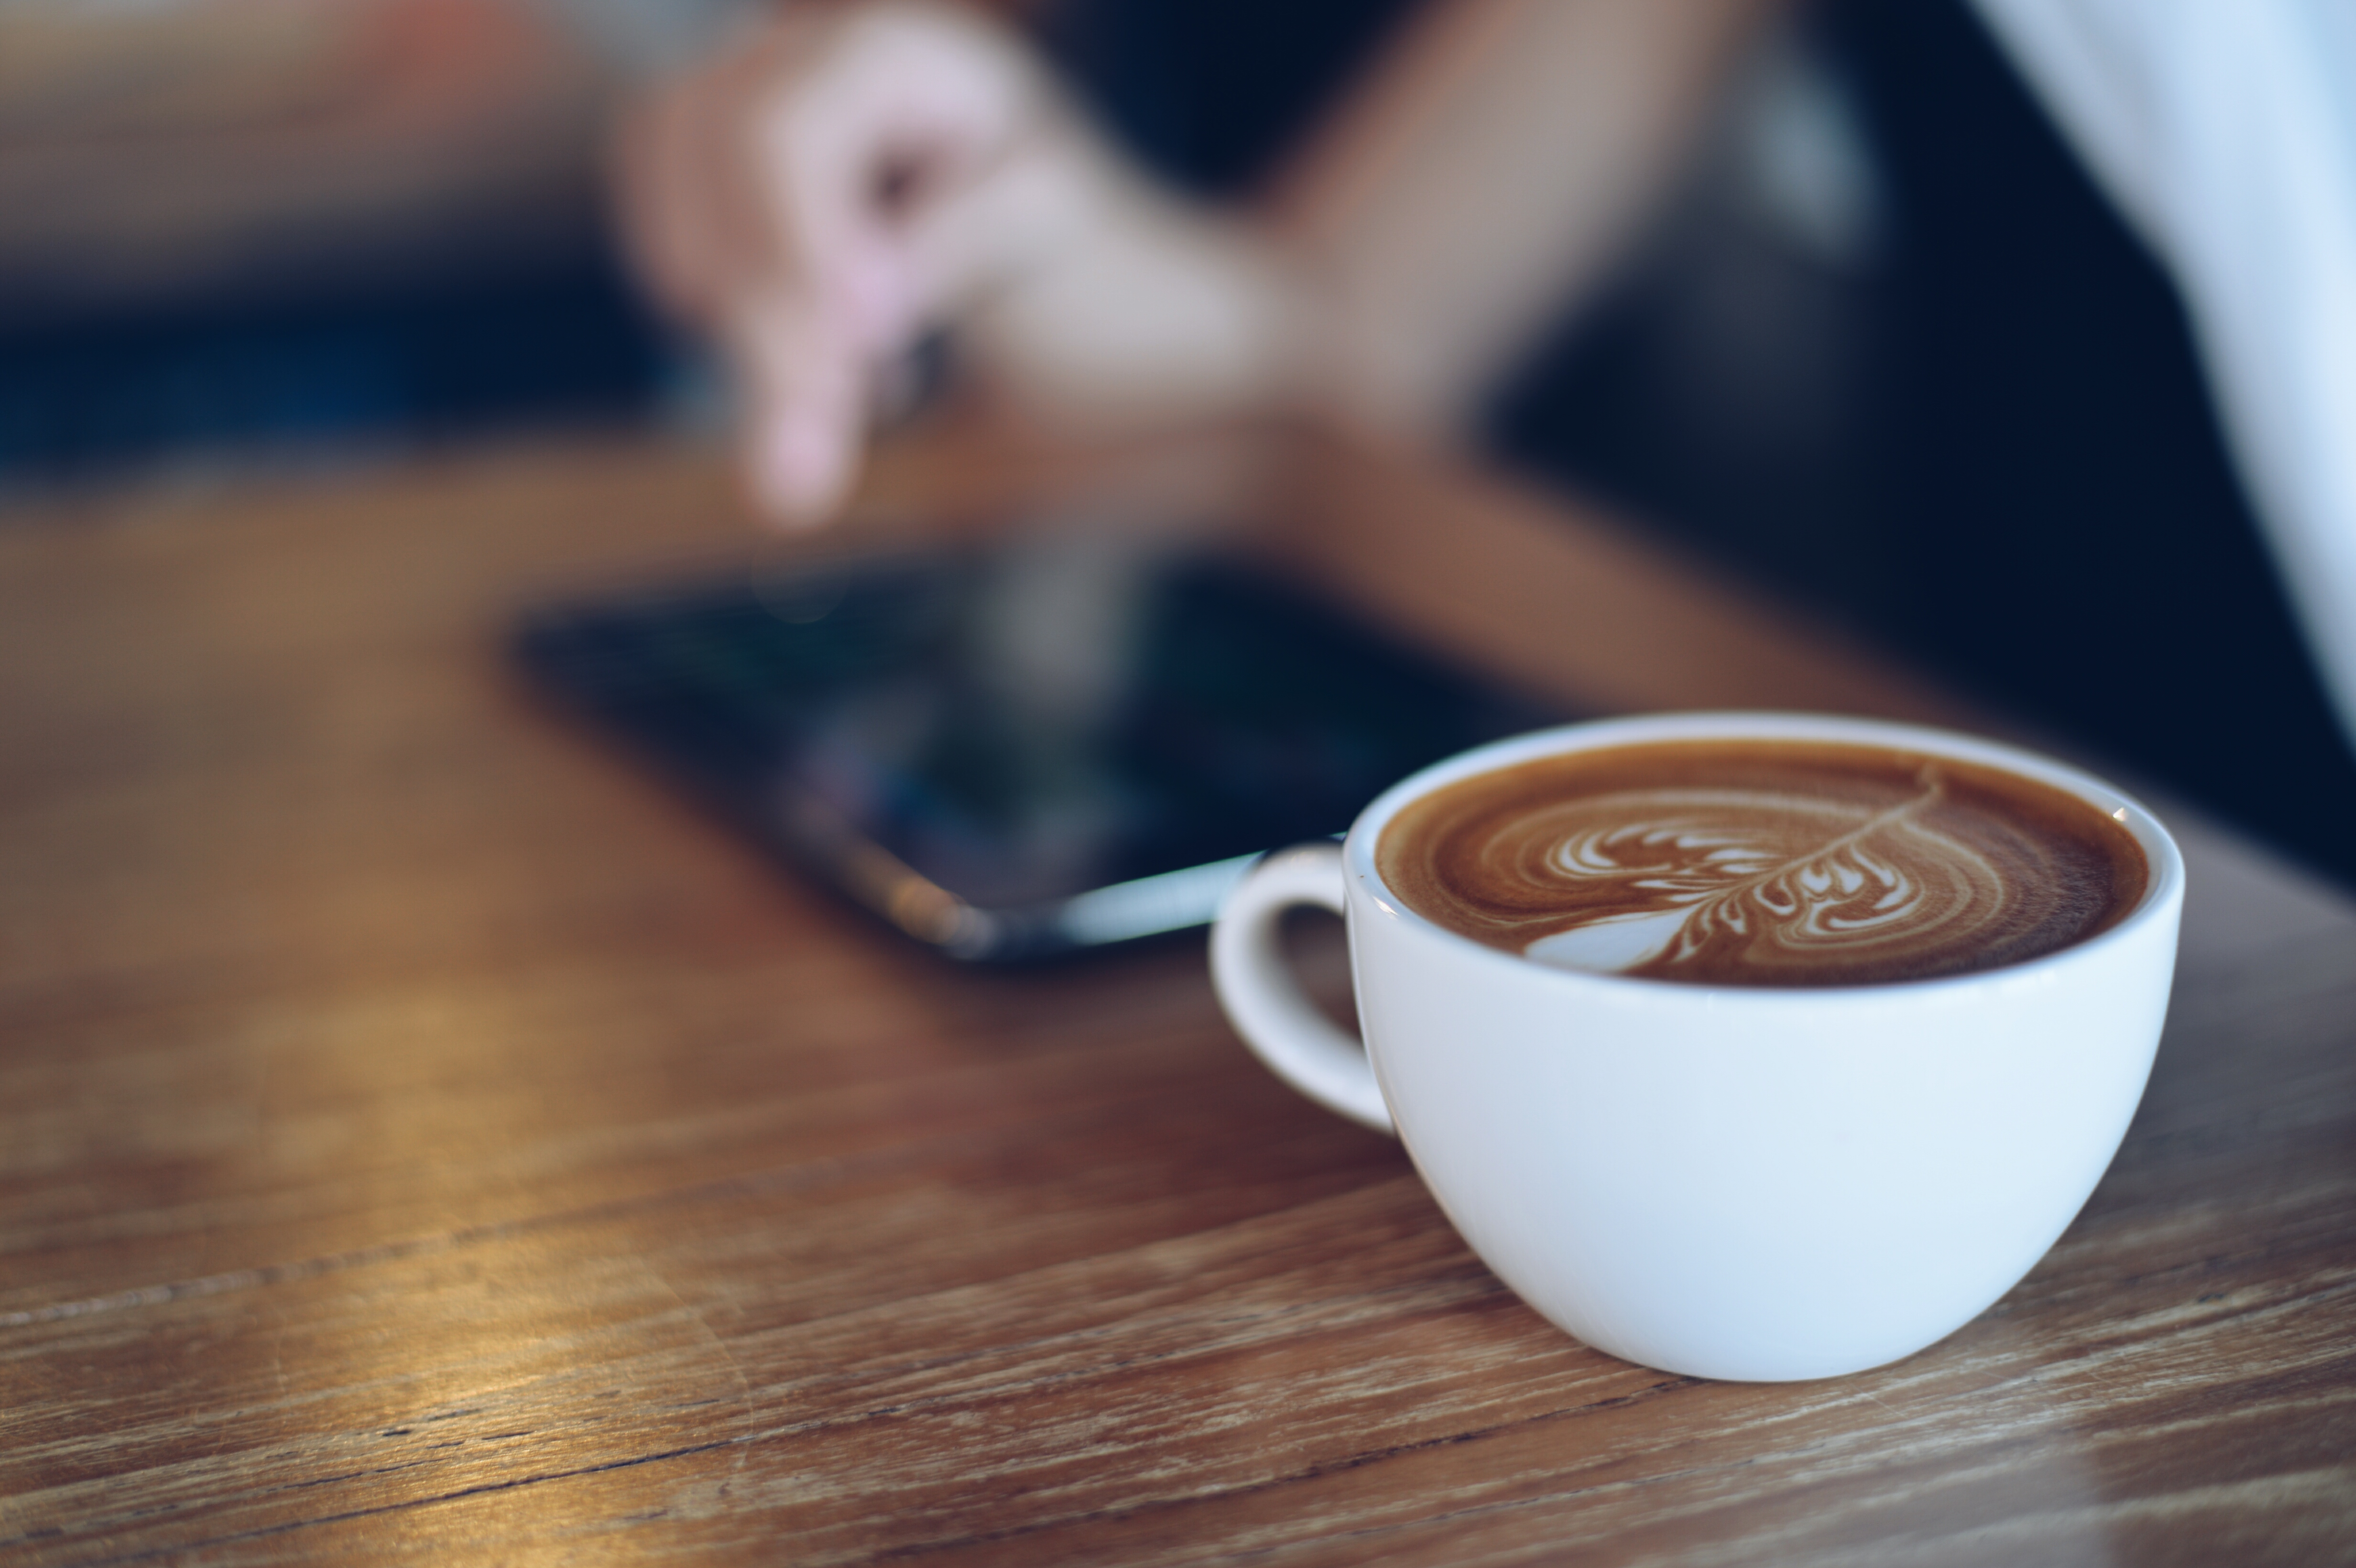 Mark Fascinerend struik Hoeveel kost jouw koffie per kopje? aangeboden door myShopi